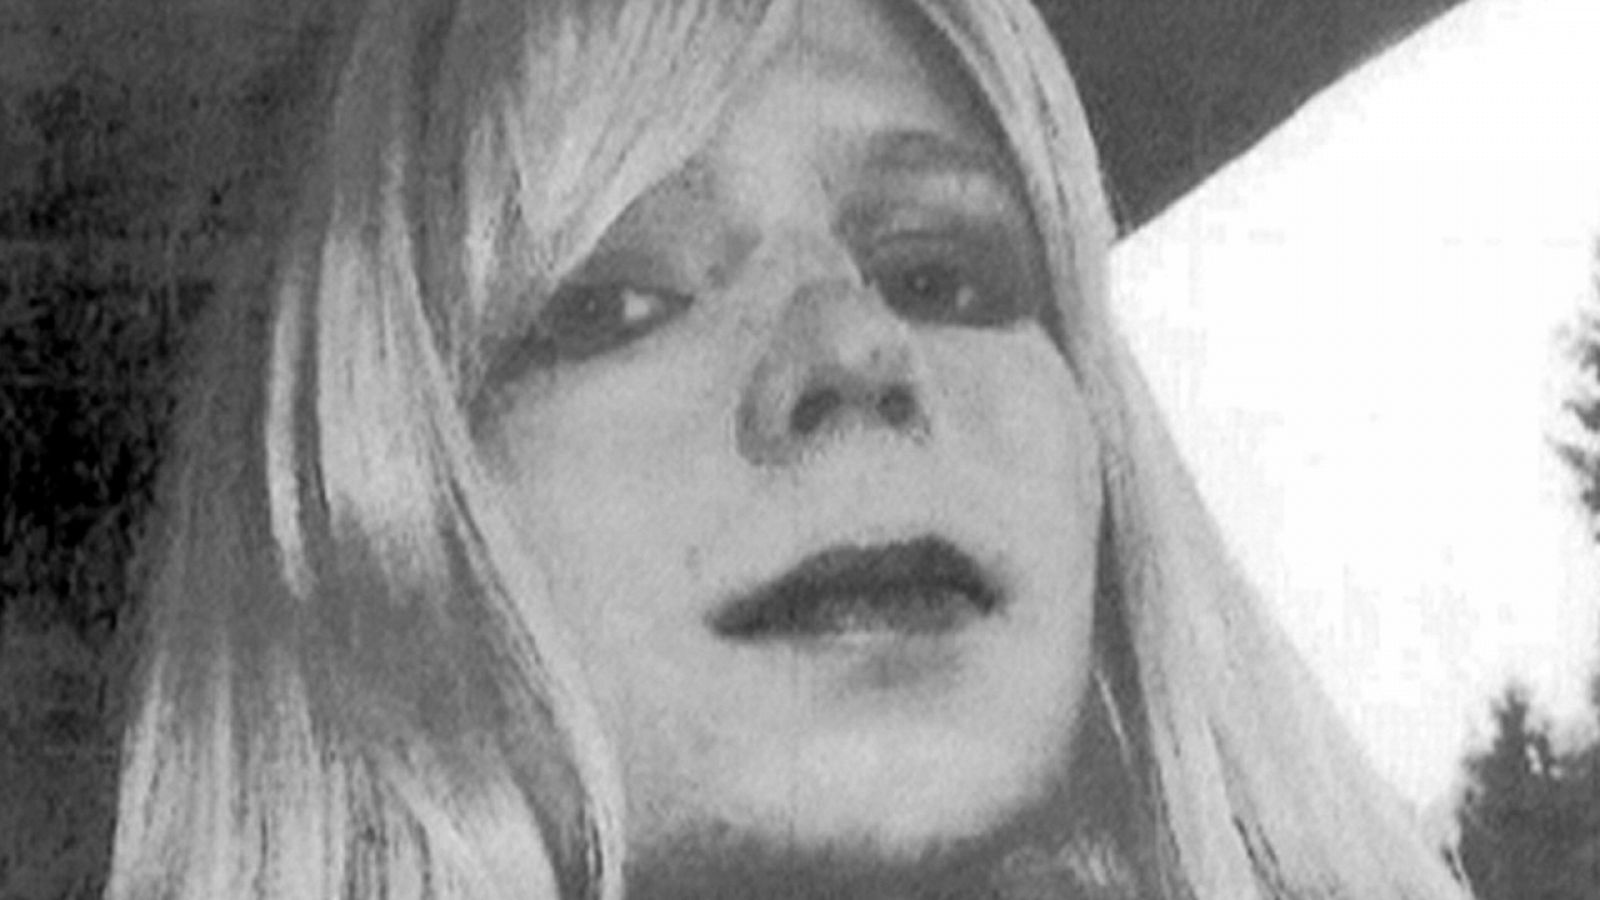 La ex militar Chelsea Manning, en una fotografía caracterizada de mujer antes de la reasignación de género (foto archivo)